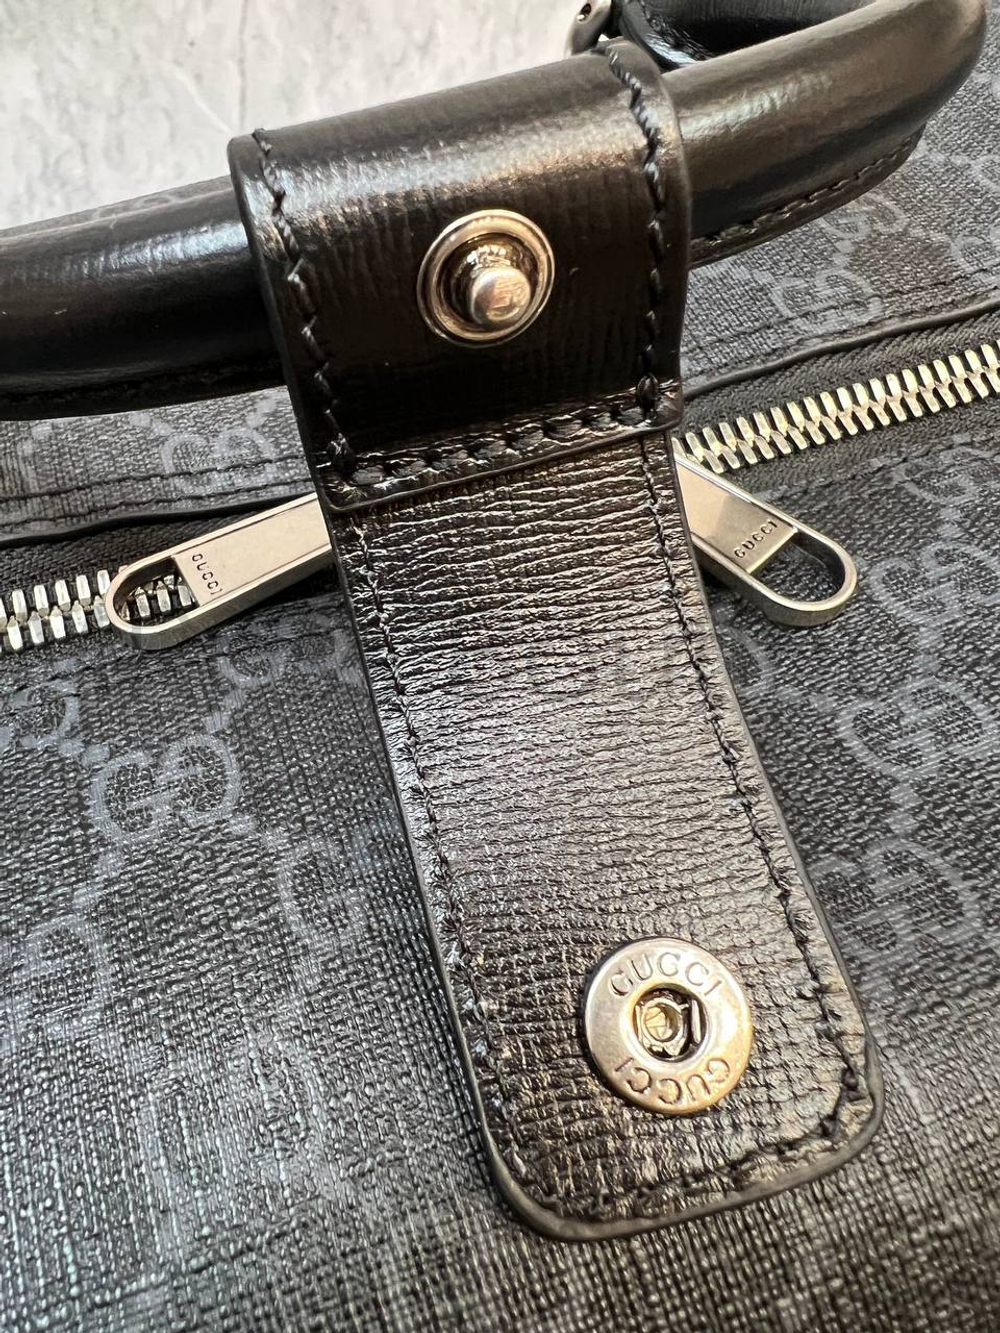 Дорожная сумка дафл Gucci премиум класса